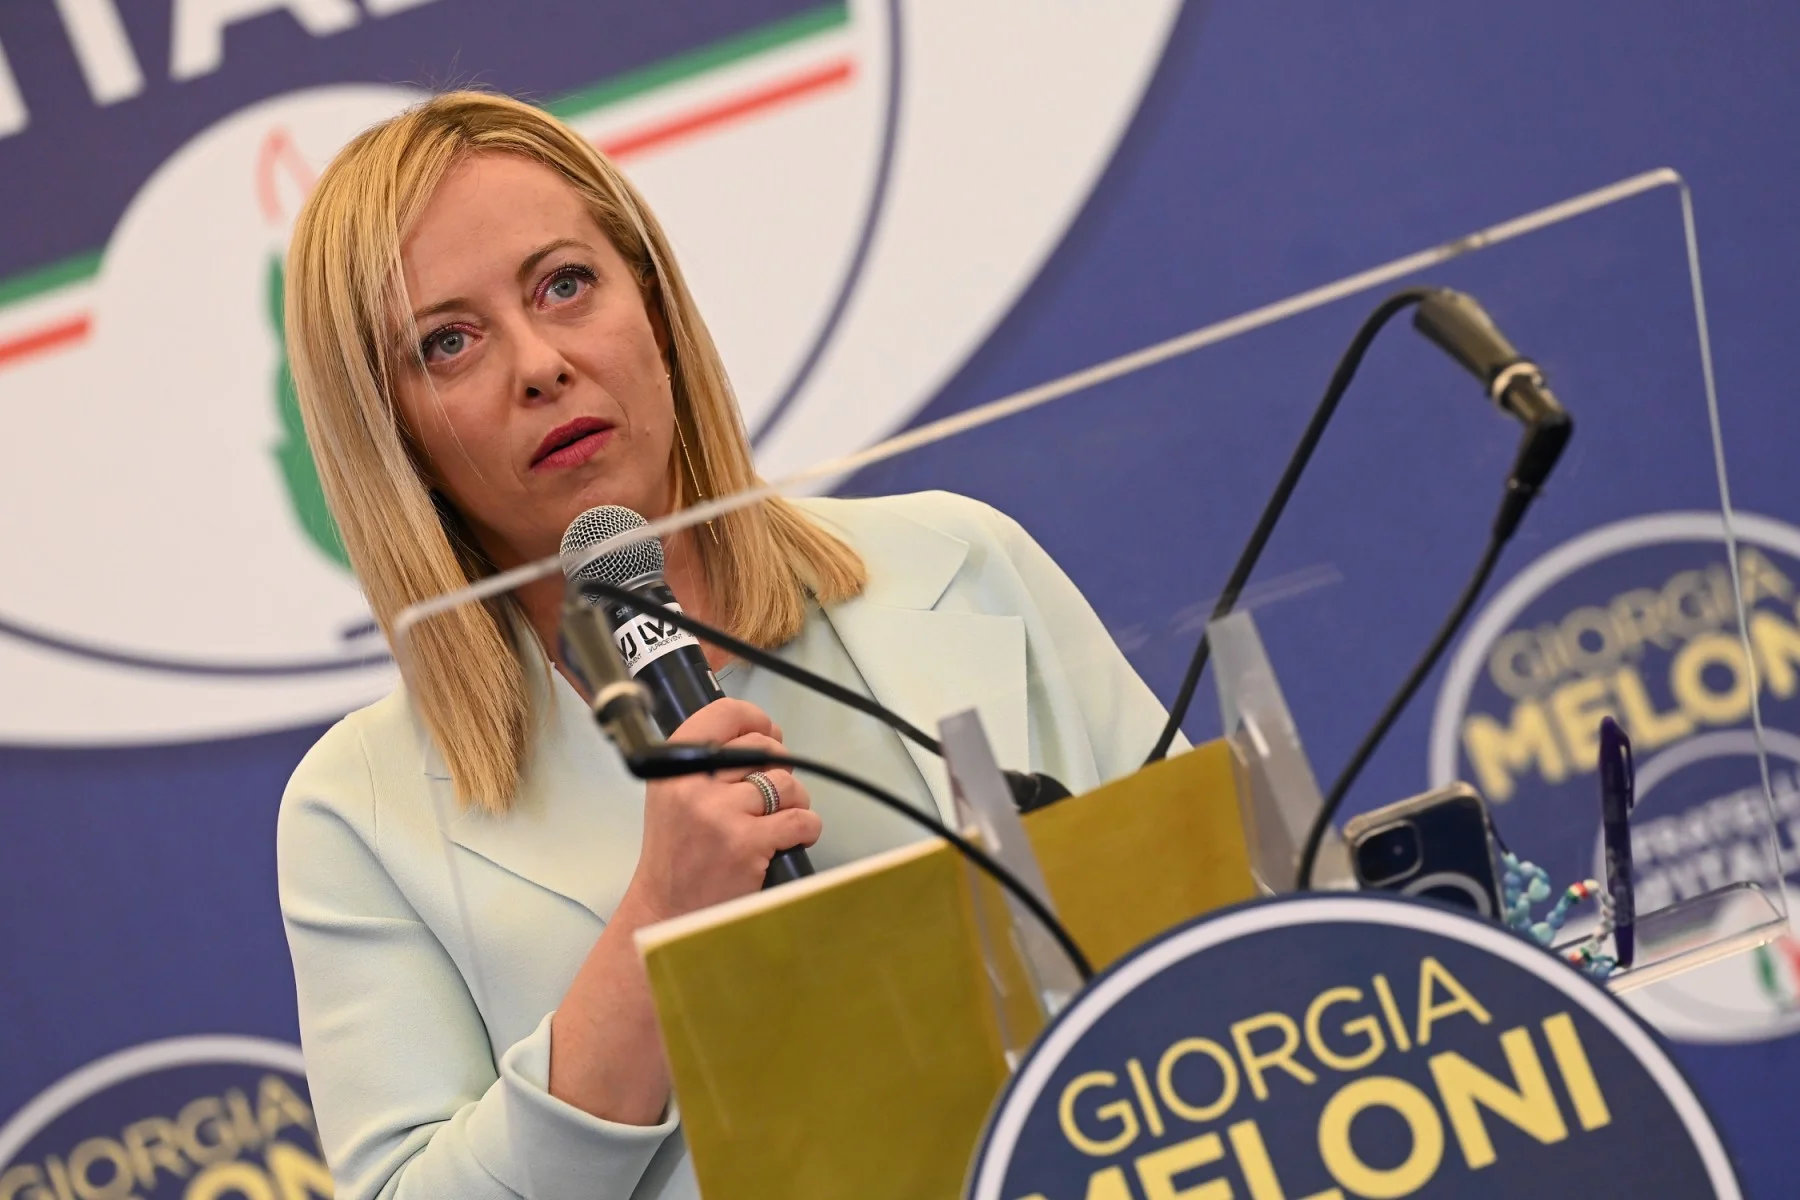 Qui est Giorgia Meloni, la présidente du parti post-fasciste en passe de devenir cheffe du gouvernement italien ?